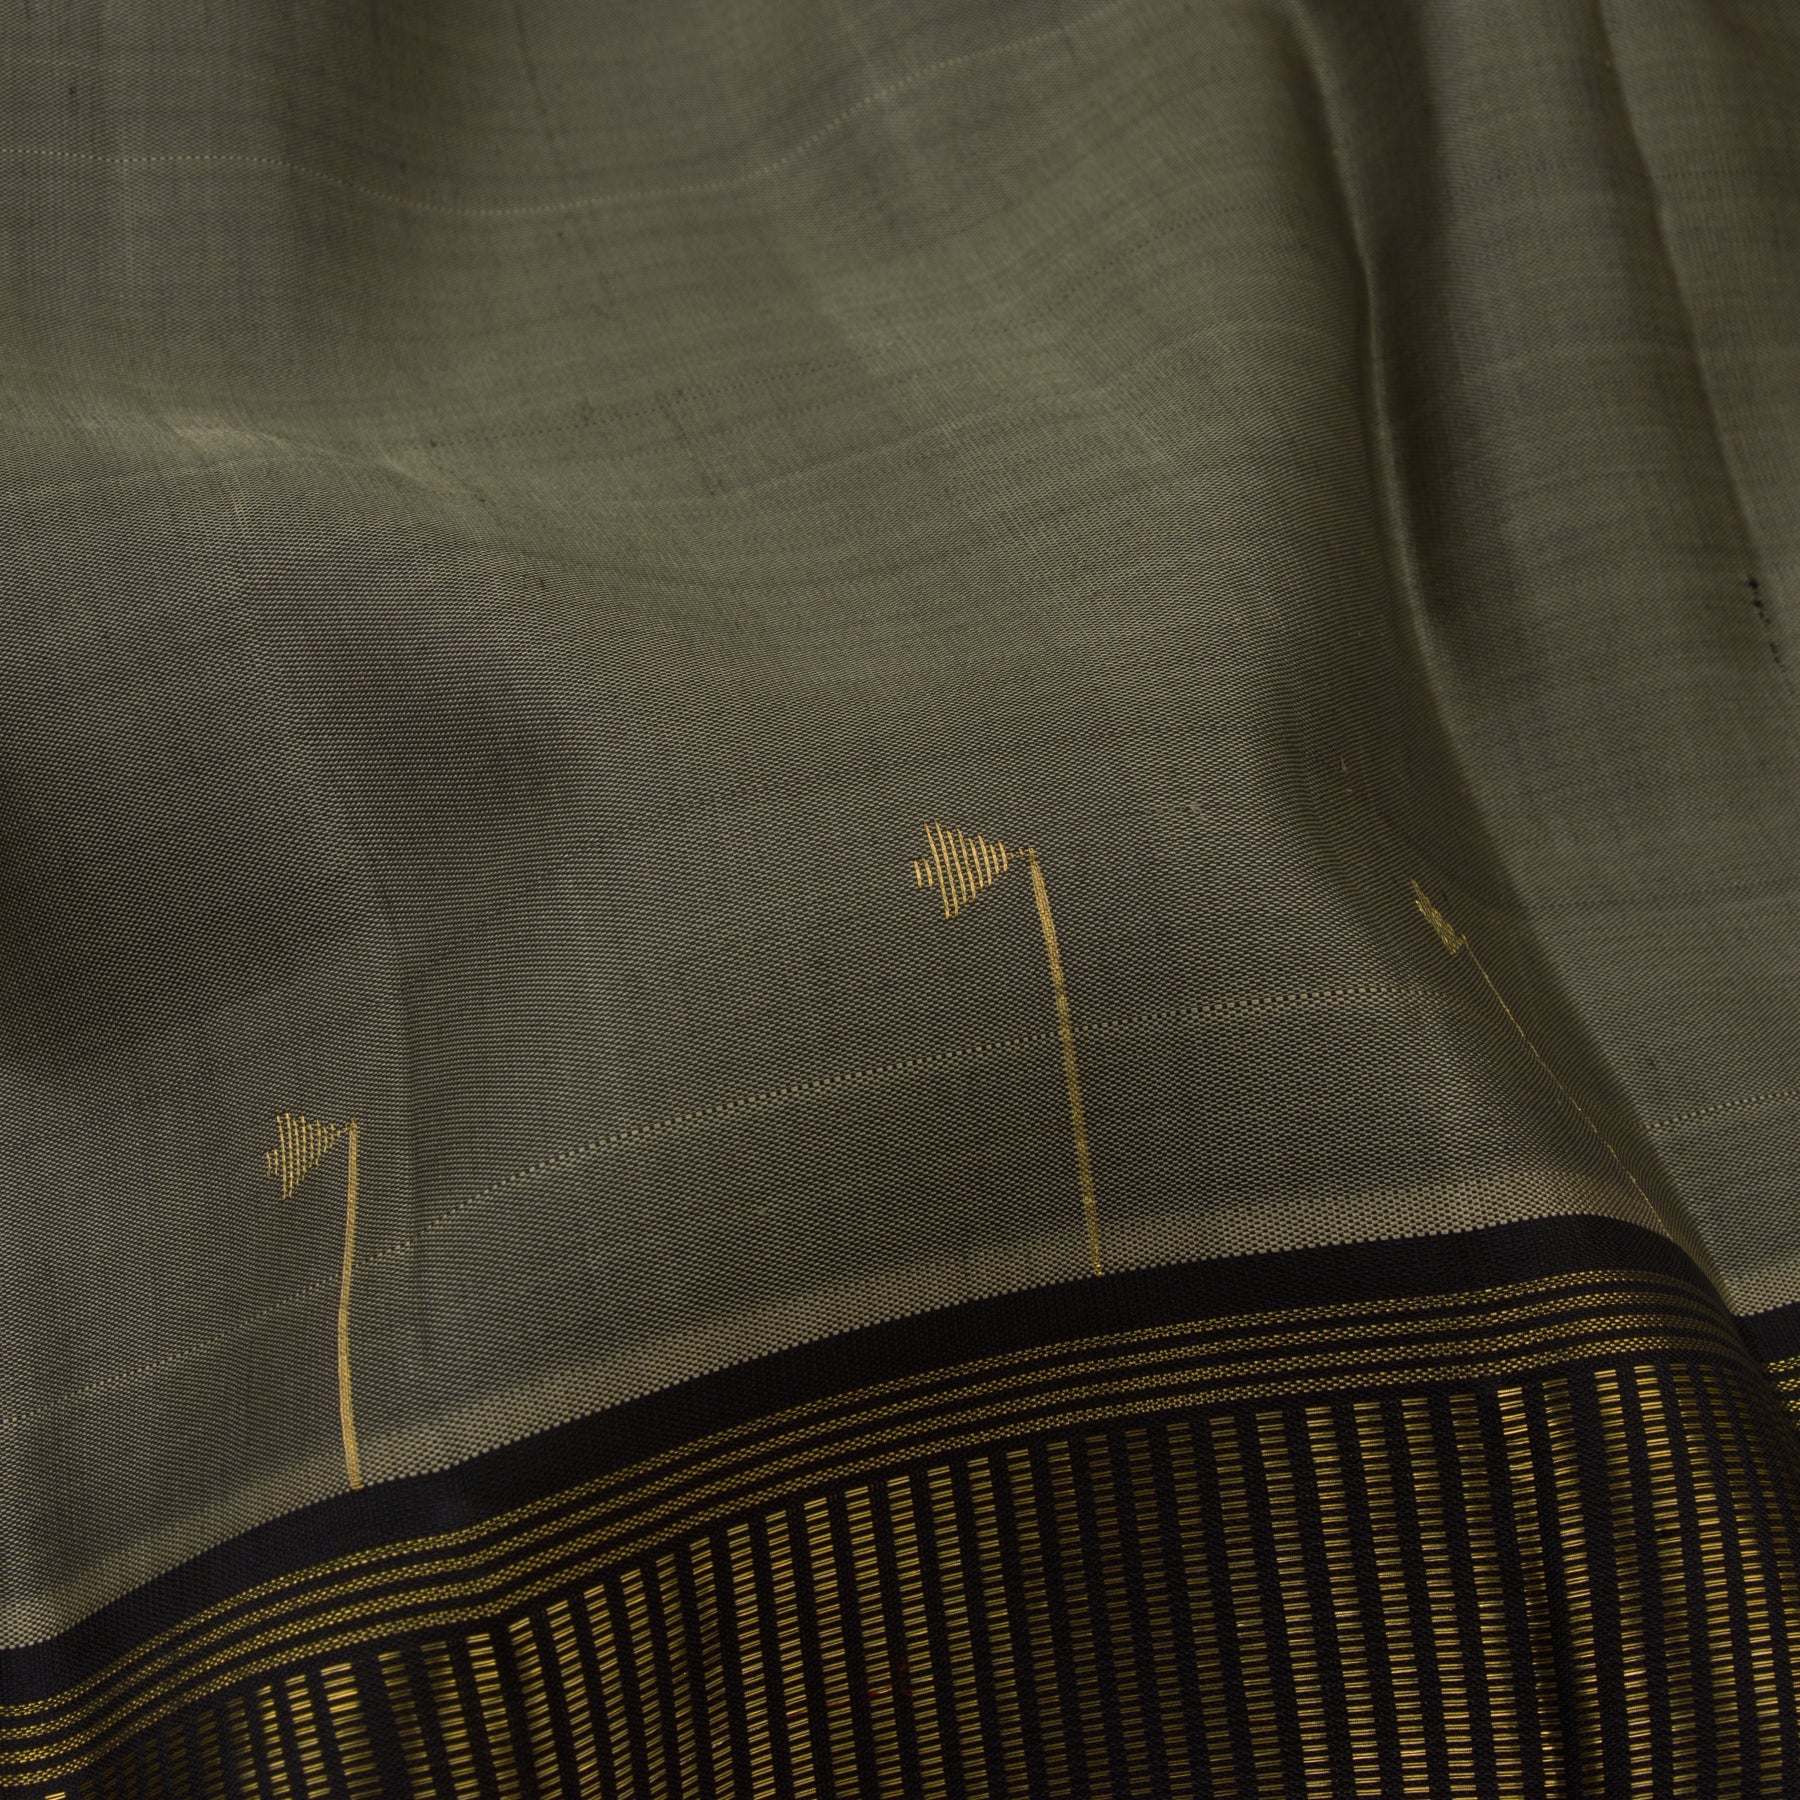 Kanakavalli Kanjivaram Silk Sari 23-560-HS001-01290 - Fabric View